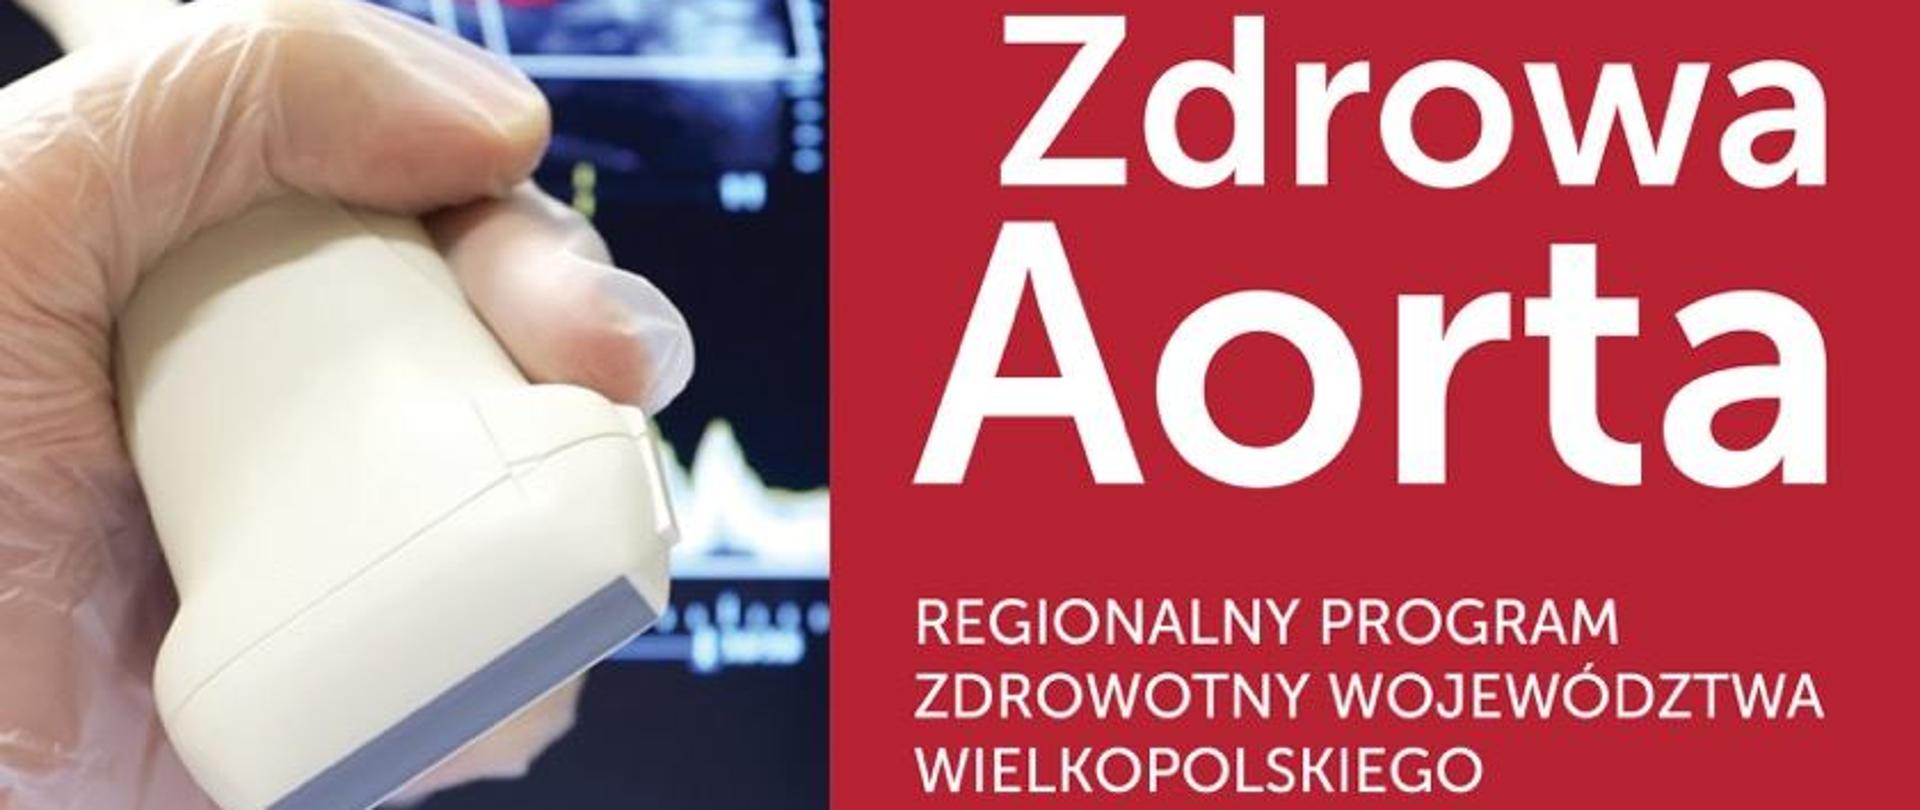 Plakat promujący Regionalny Program Zdrowotny Województwa Wielkopolskiego "Zdrowa Aorta"